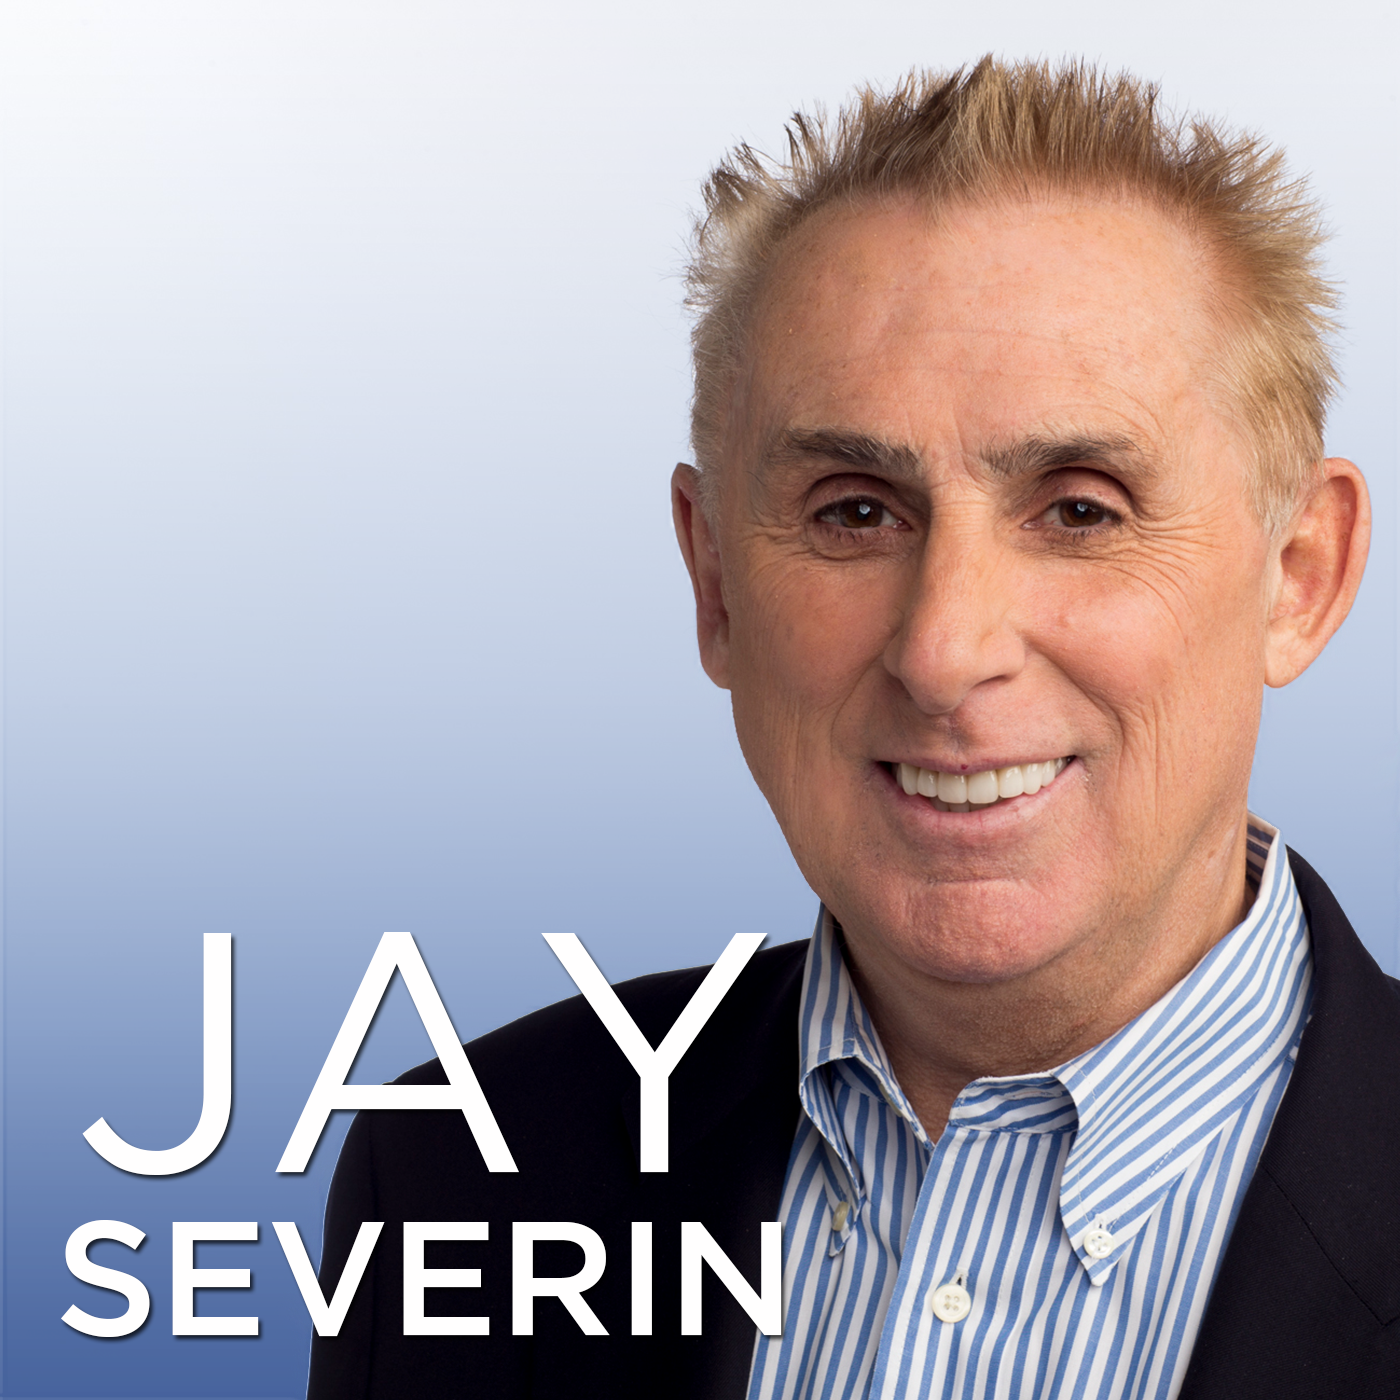 Jay Severin